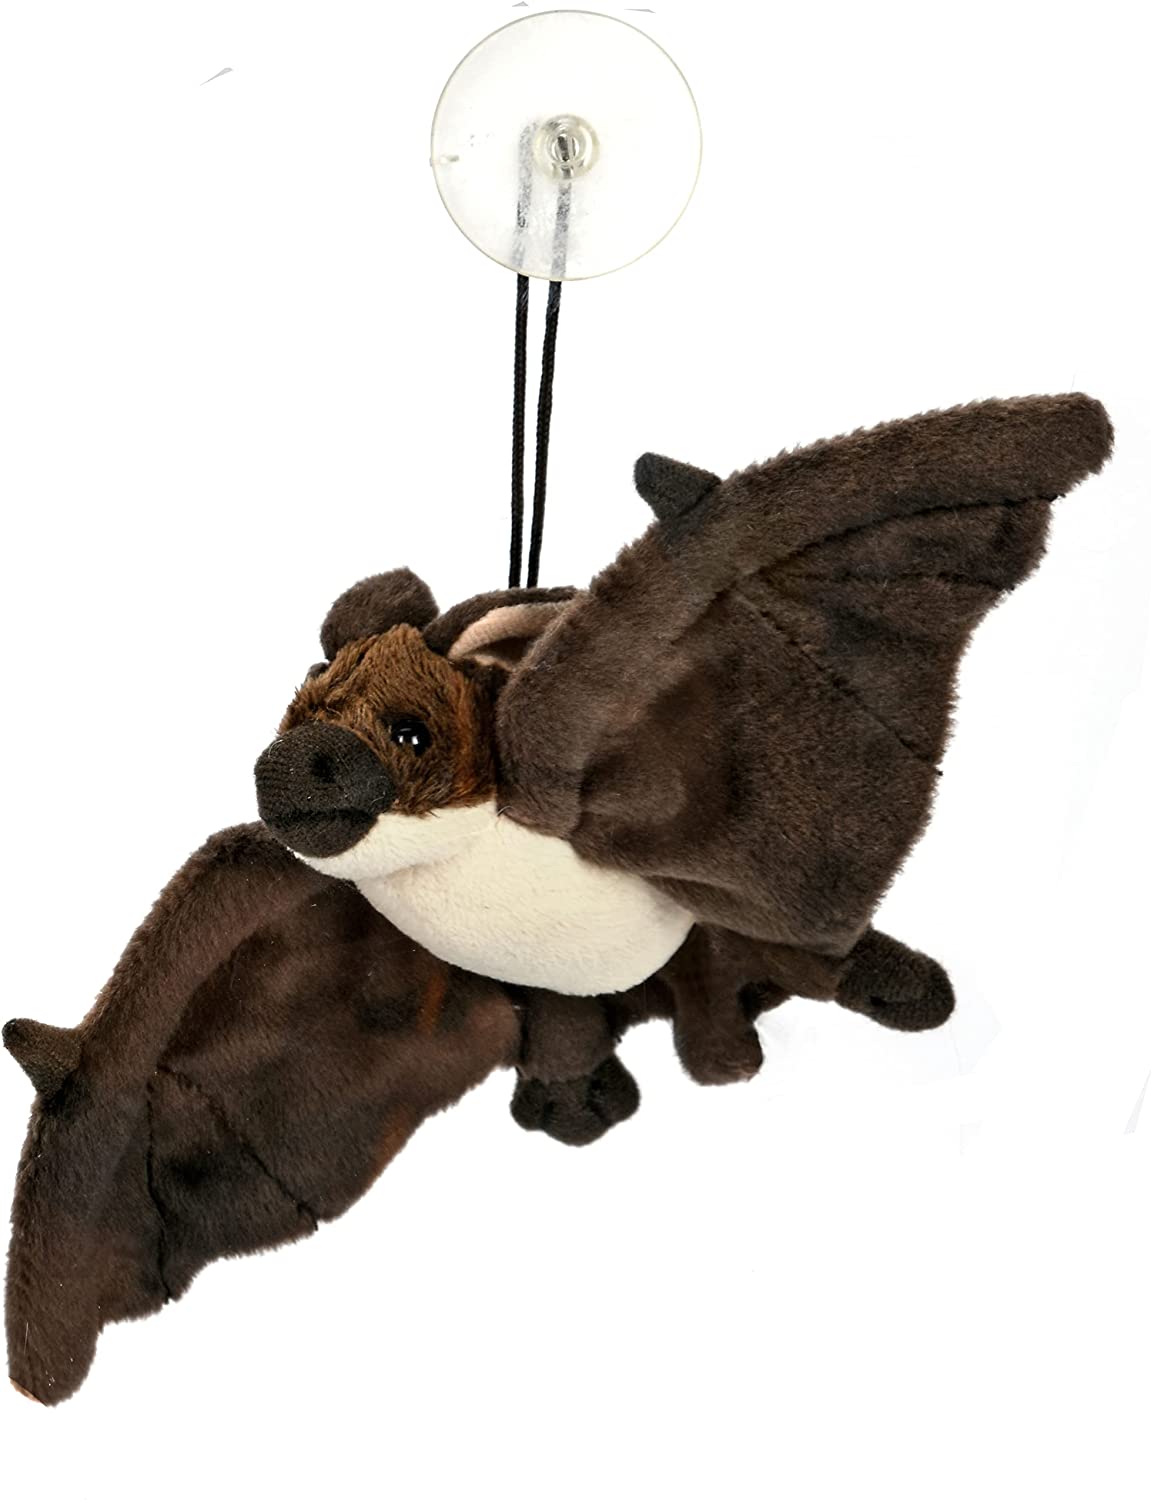 Uni-Toys - Fledermaus, braun klein Saugnapf - 23 cm (Breite) - Plüschtier, Kuscheltier … 